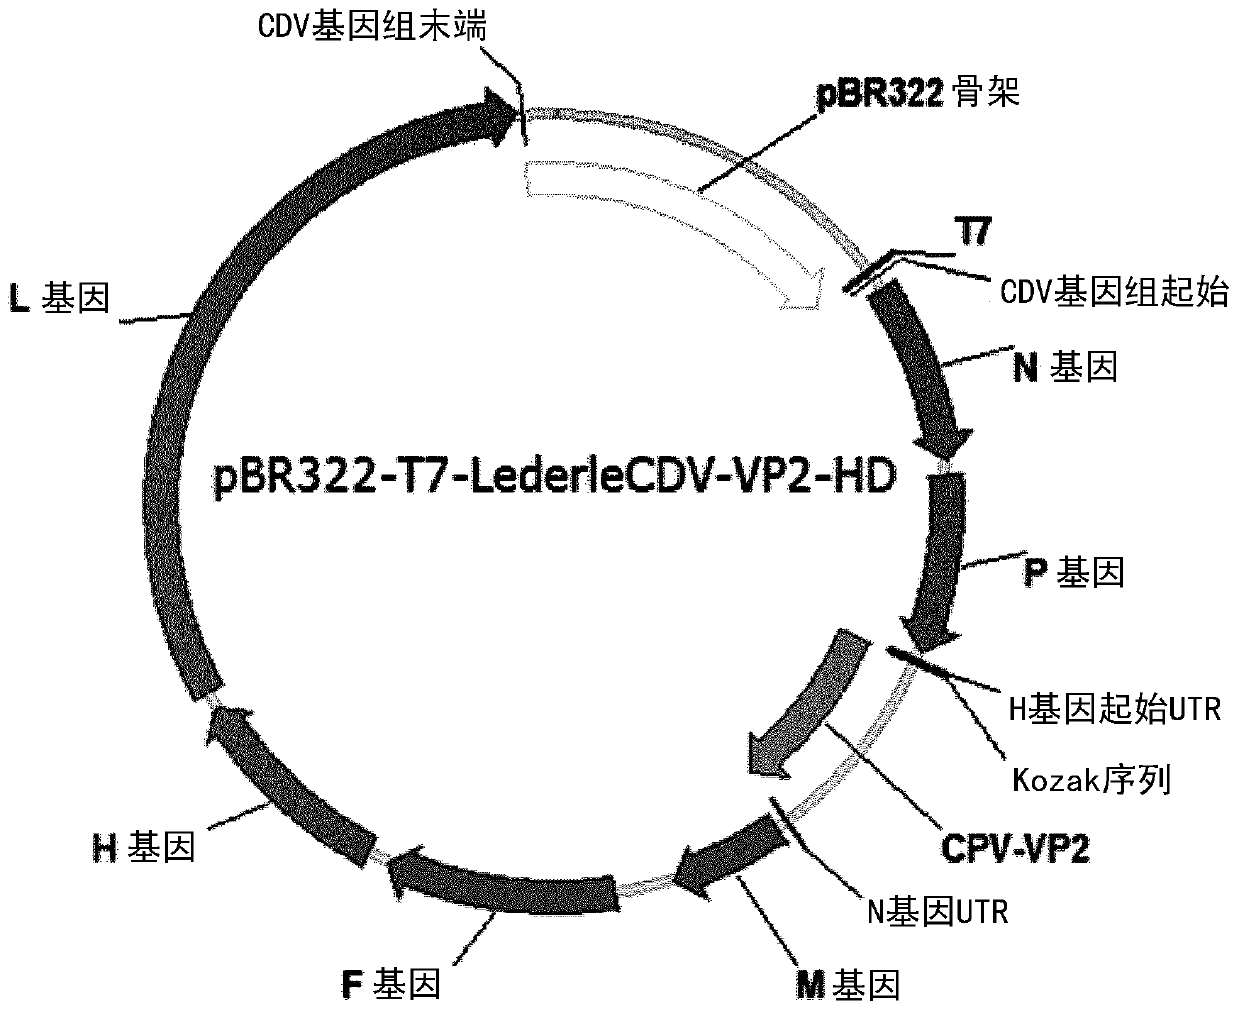 Paramyxoviridae expression system